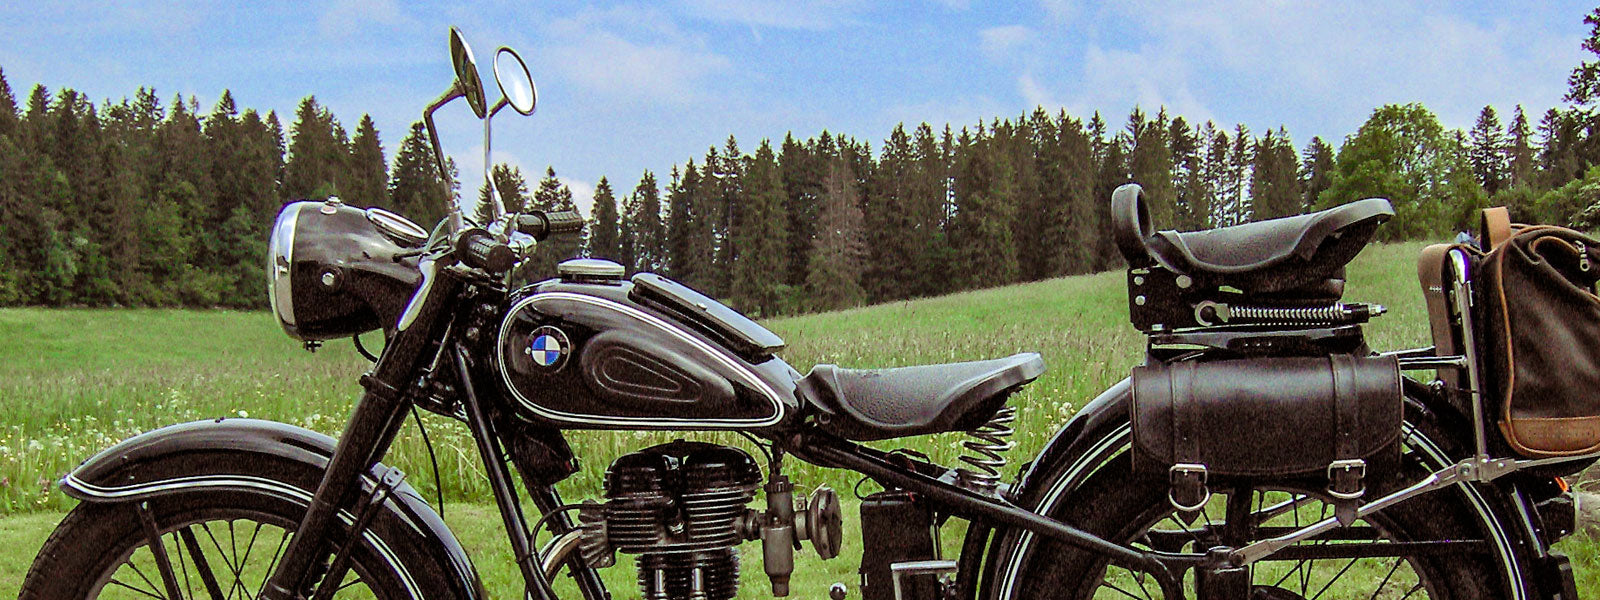 Entretenir ses sacoches moto Feuille2routes - Vintage Motors Mag :  Actualités, essais d'équipement moto et scooter.